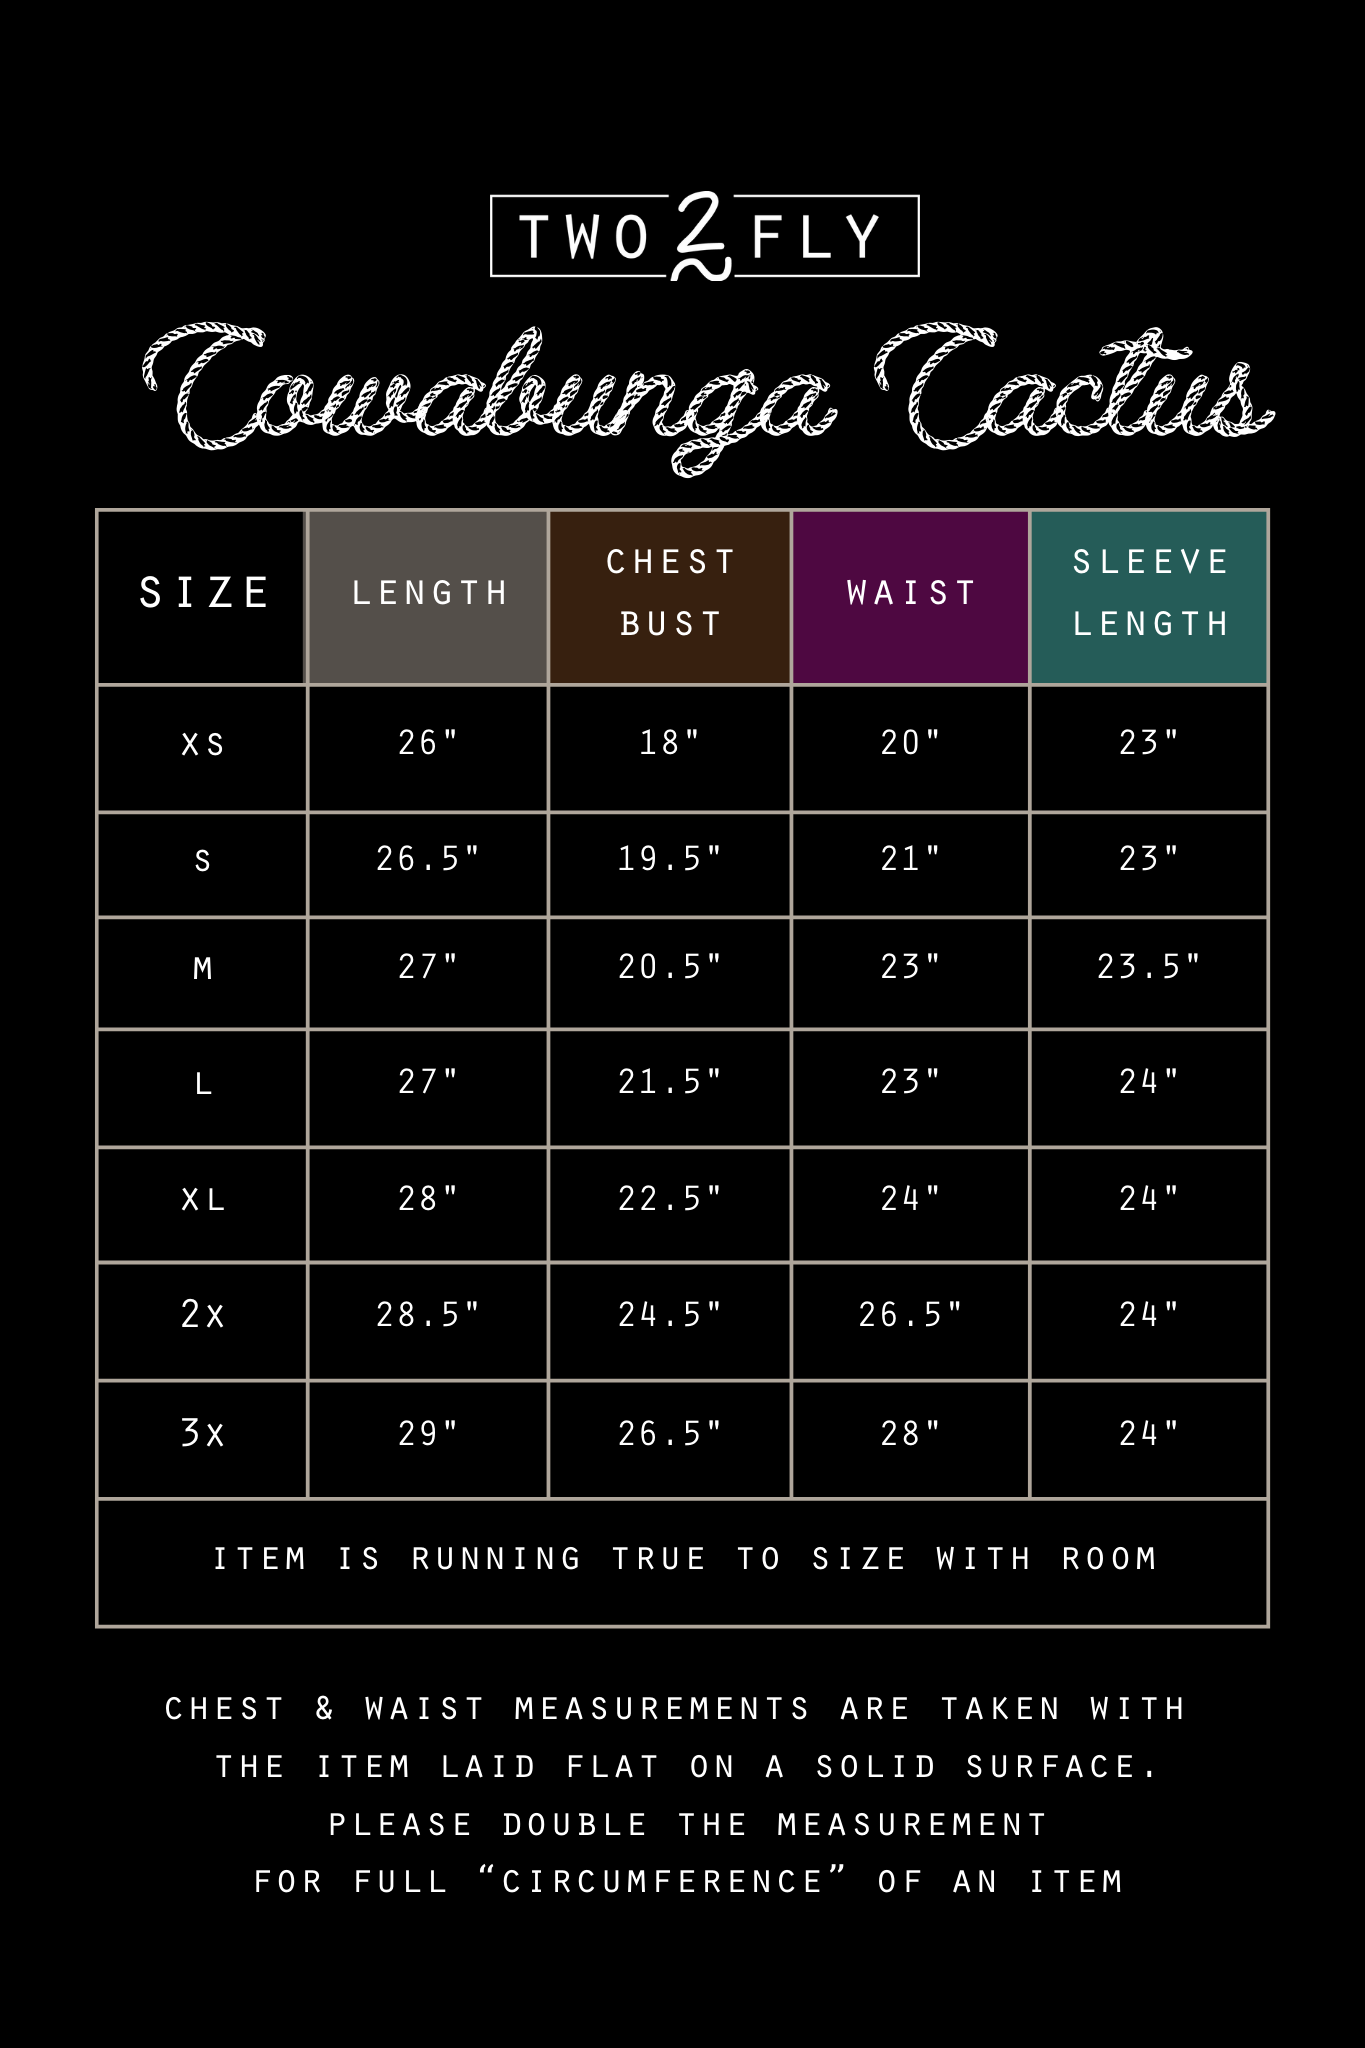 COWABUNGA CACTUS *SALE